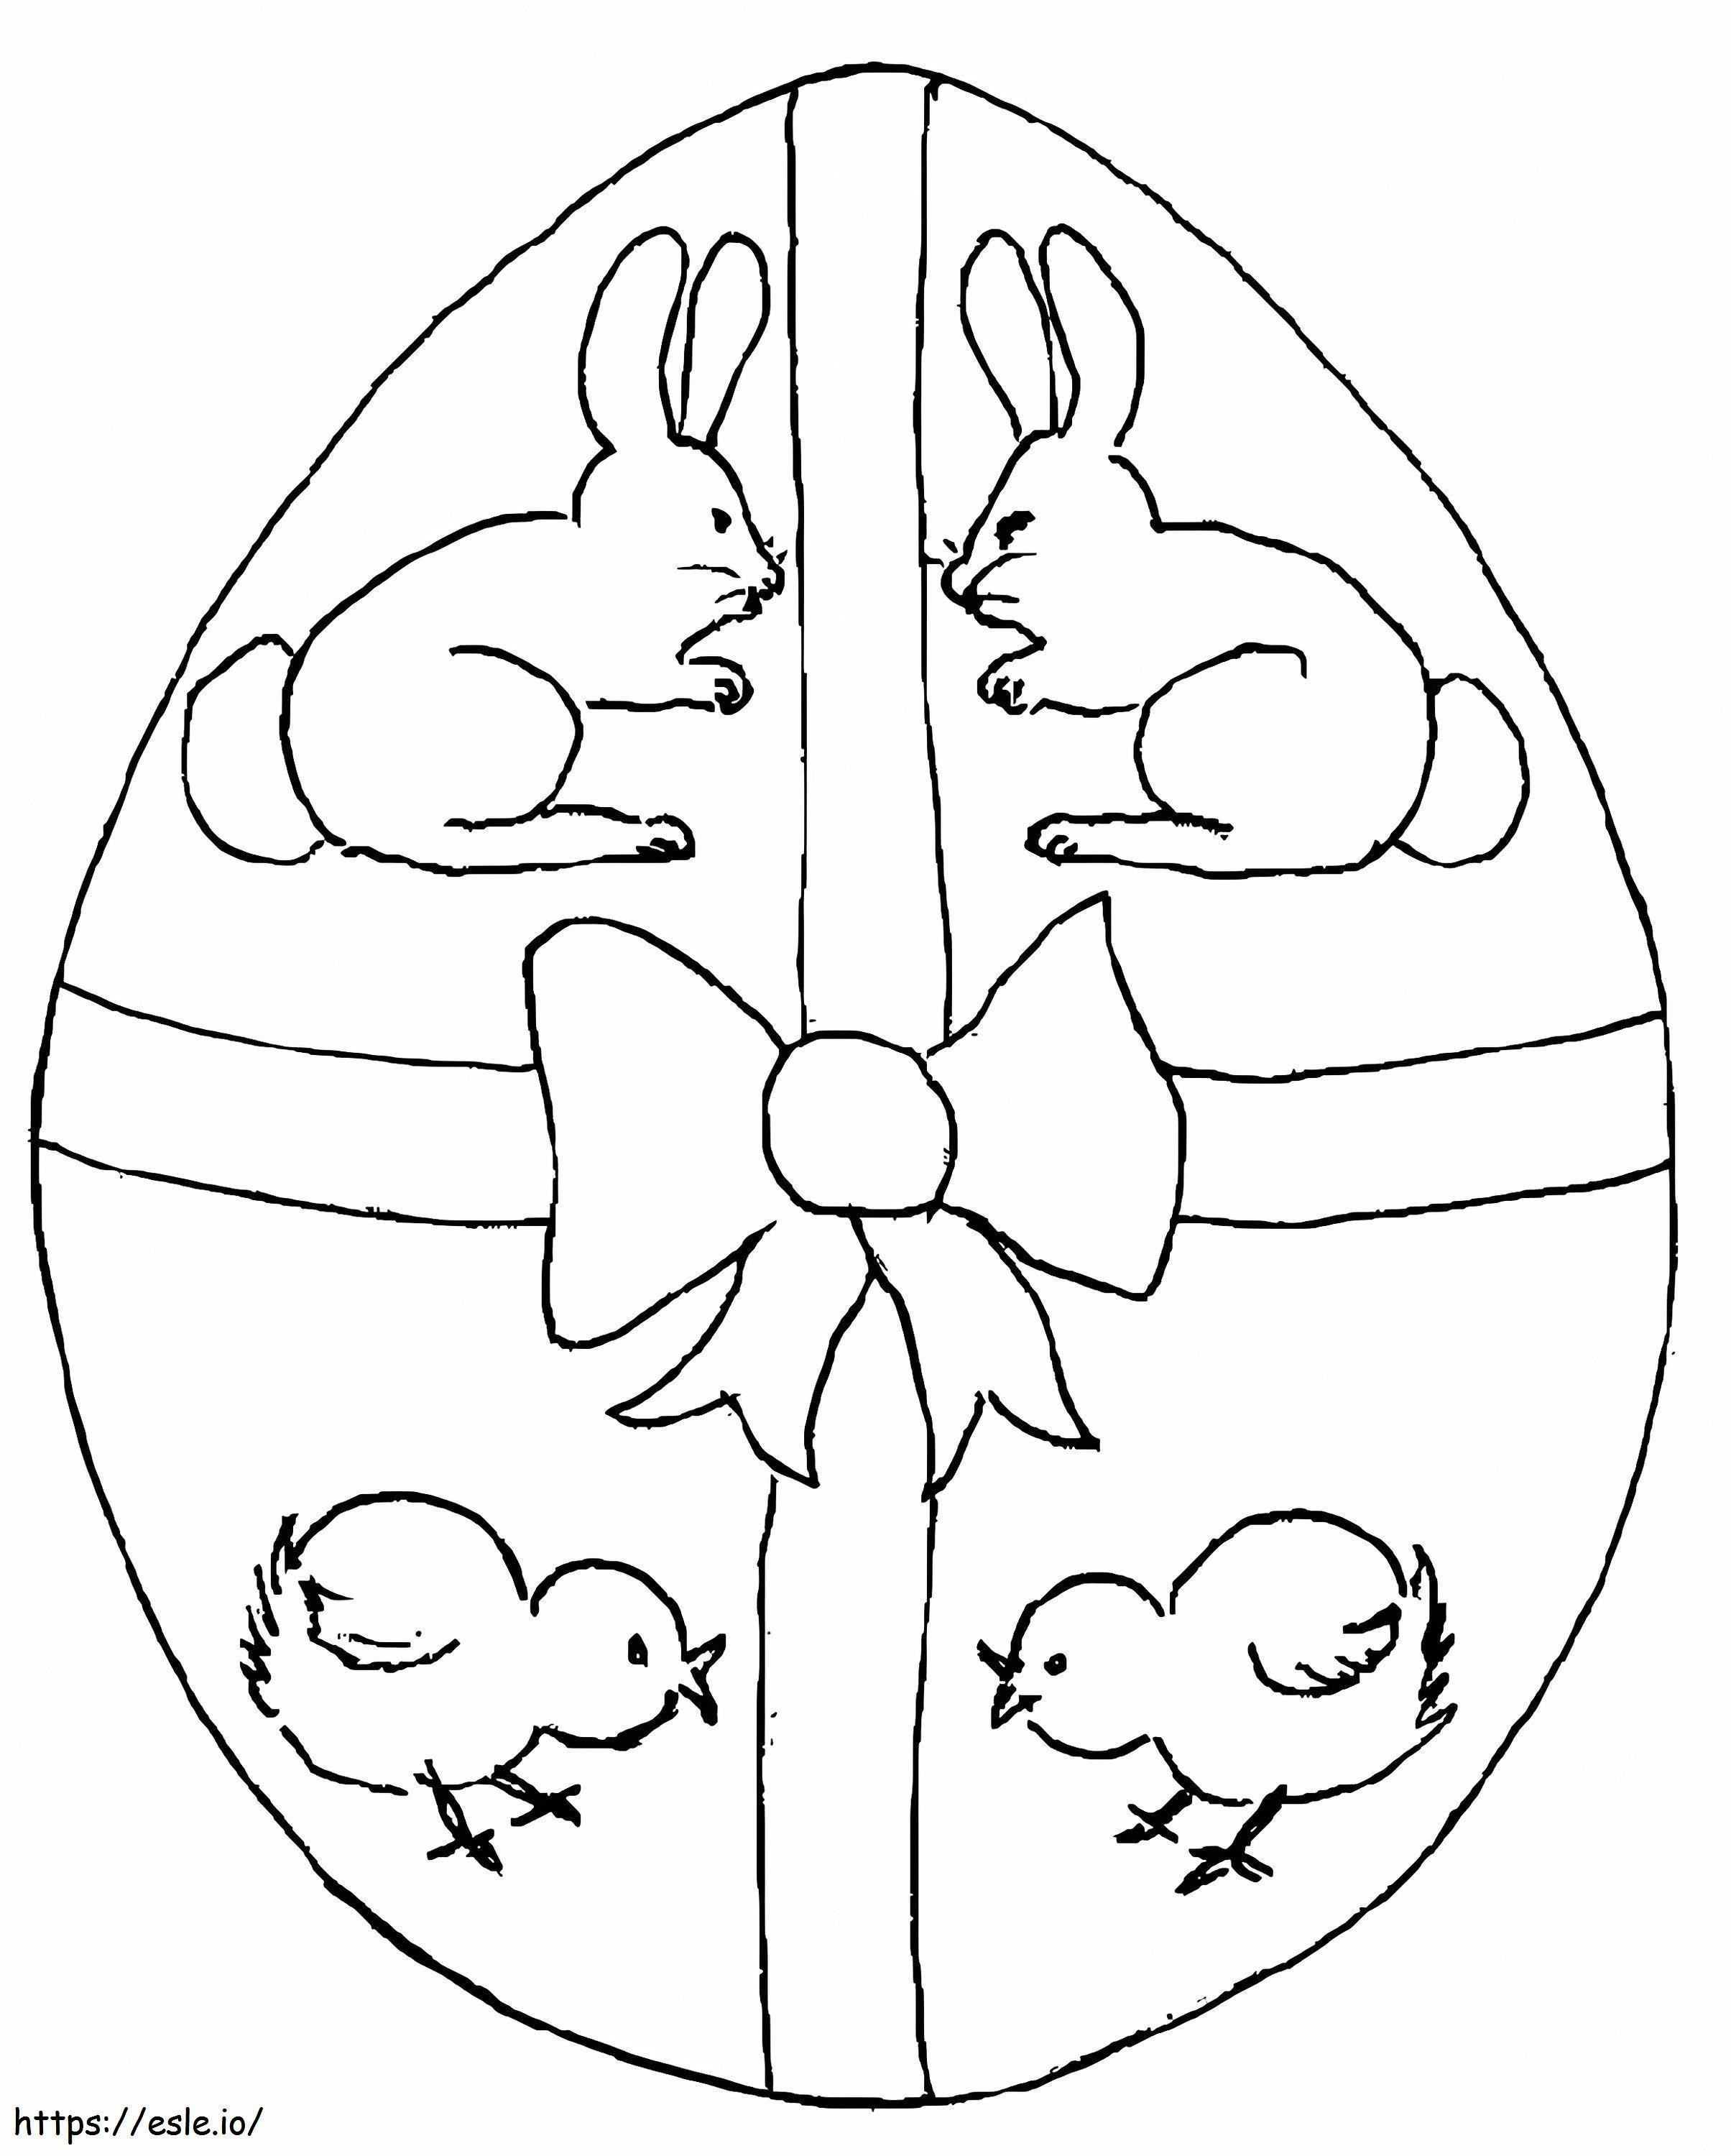 Uovo Di Pasqua Del Pollo E Del Coniglio da colorare